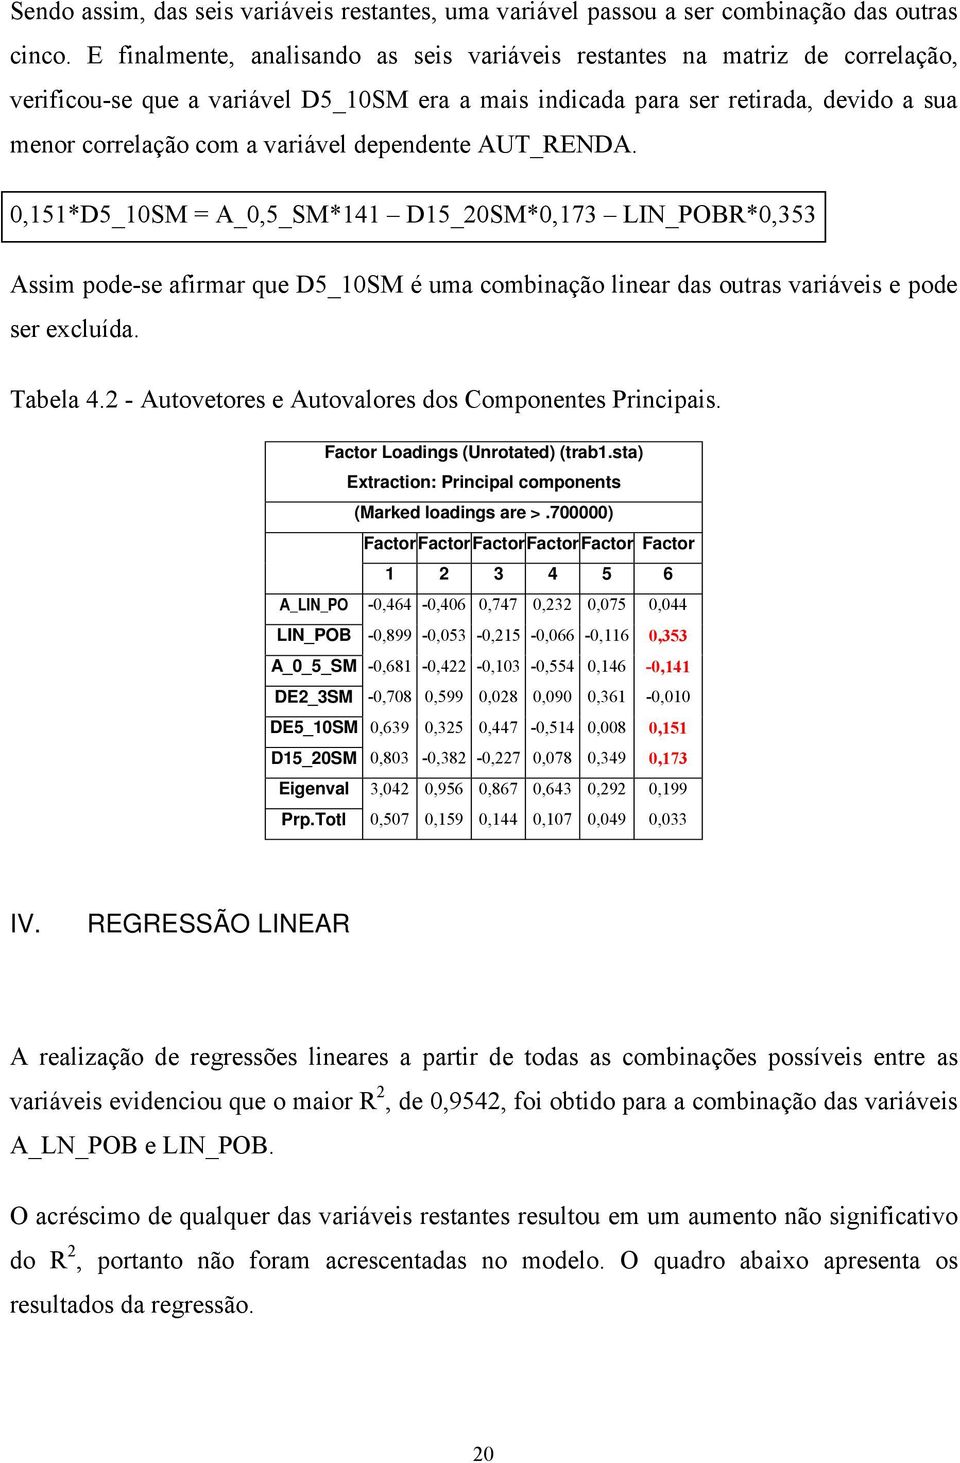 dependente AUT_RENDA. 0,151*D5_10SM = A_0,5_SM*141 D15_20SM*0,173 LIN_POBR*0,353 Assim pode-se afirmar que D5_10SM é uma combinação linear das outras variáveis e pode ser excluída. Tabela 4.